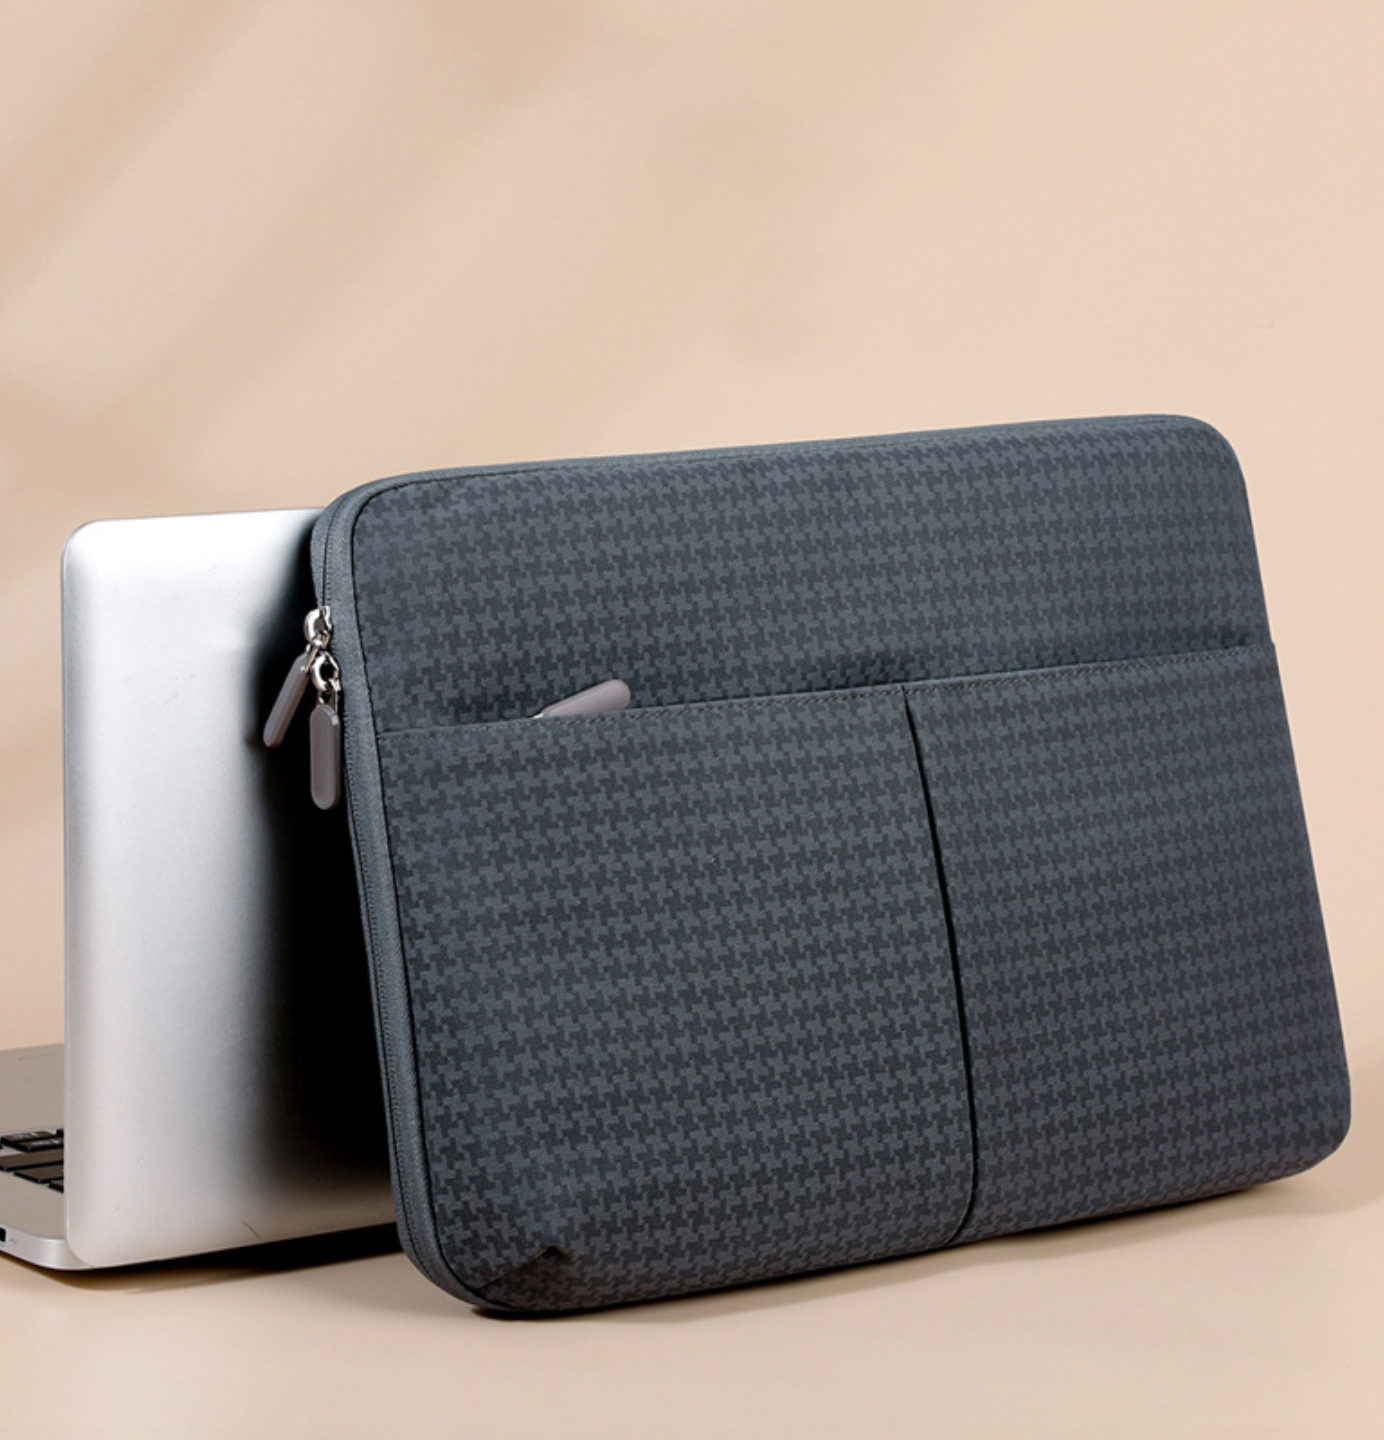 Túi chống sốc laptop, bao chống sốc máy tính xách tay mỏng gọn nhẹ chống nước - Hàng chính hãng